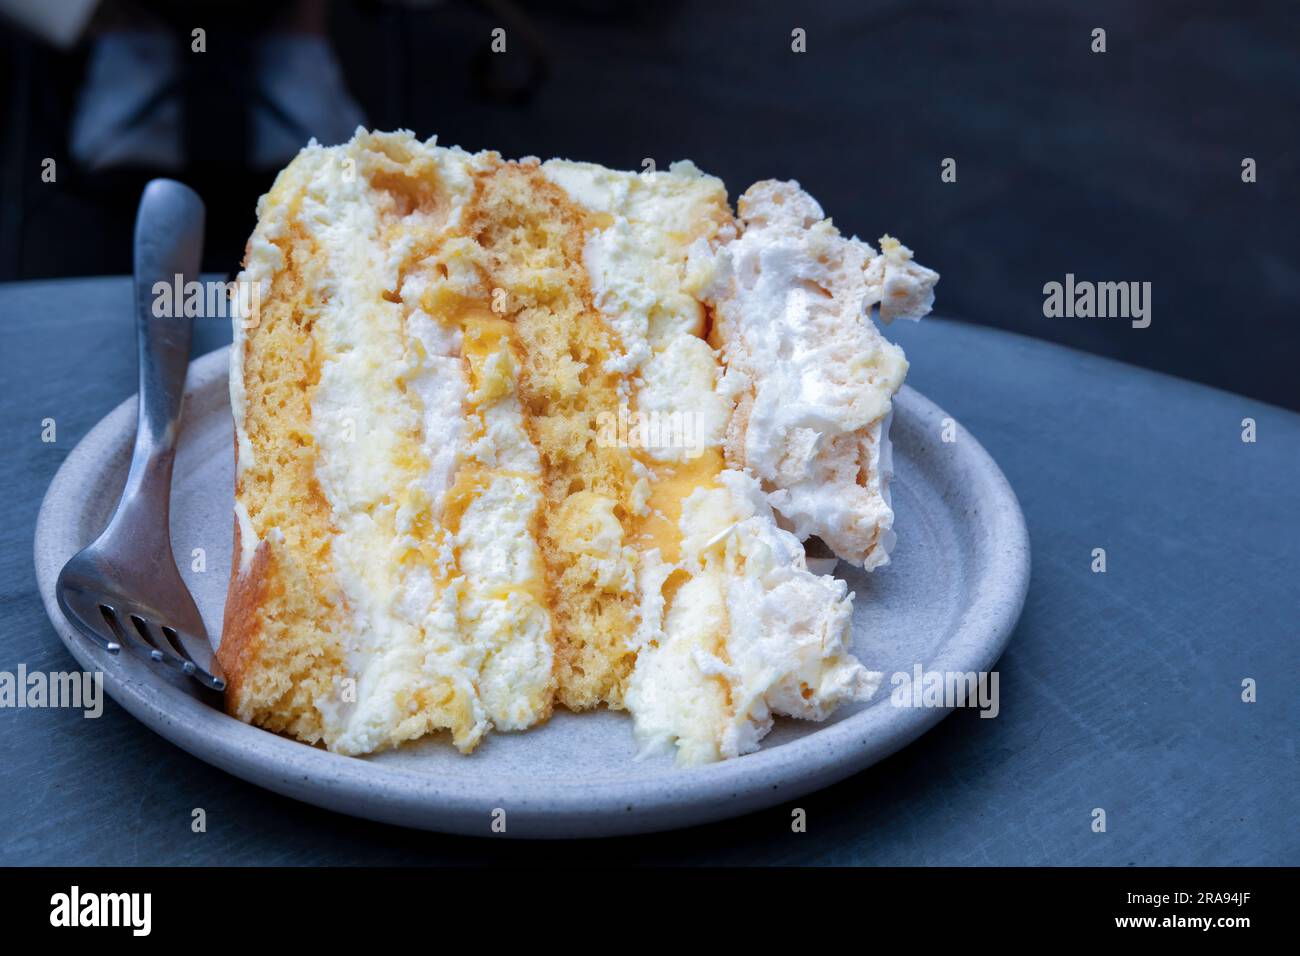 Une seule portion plaquée d'un gâteau de meringue au citron fait maison servi à une table plaquée. le gâteau a une garniture au citron caillé et un glaçage à la crème au beurre Banque D'Images